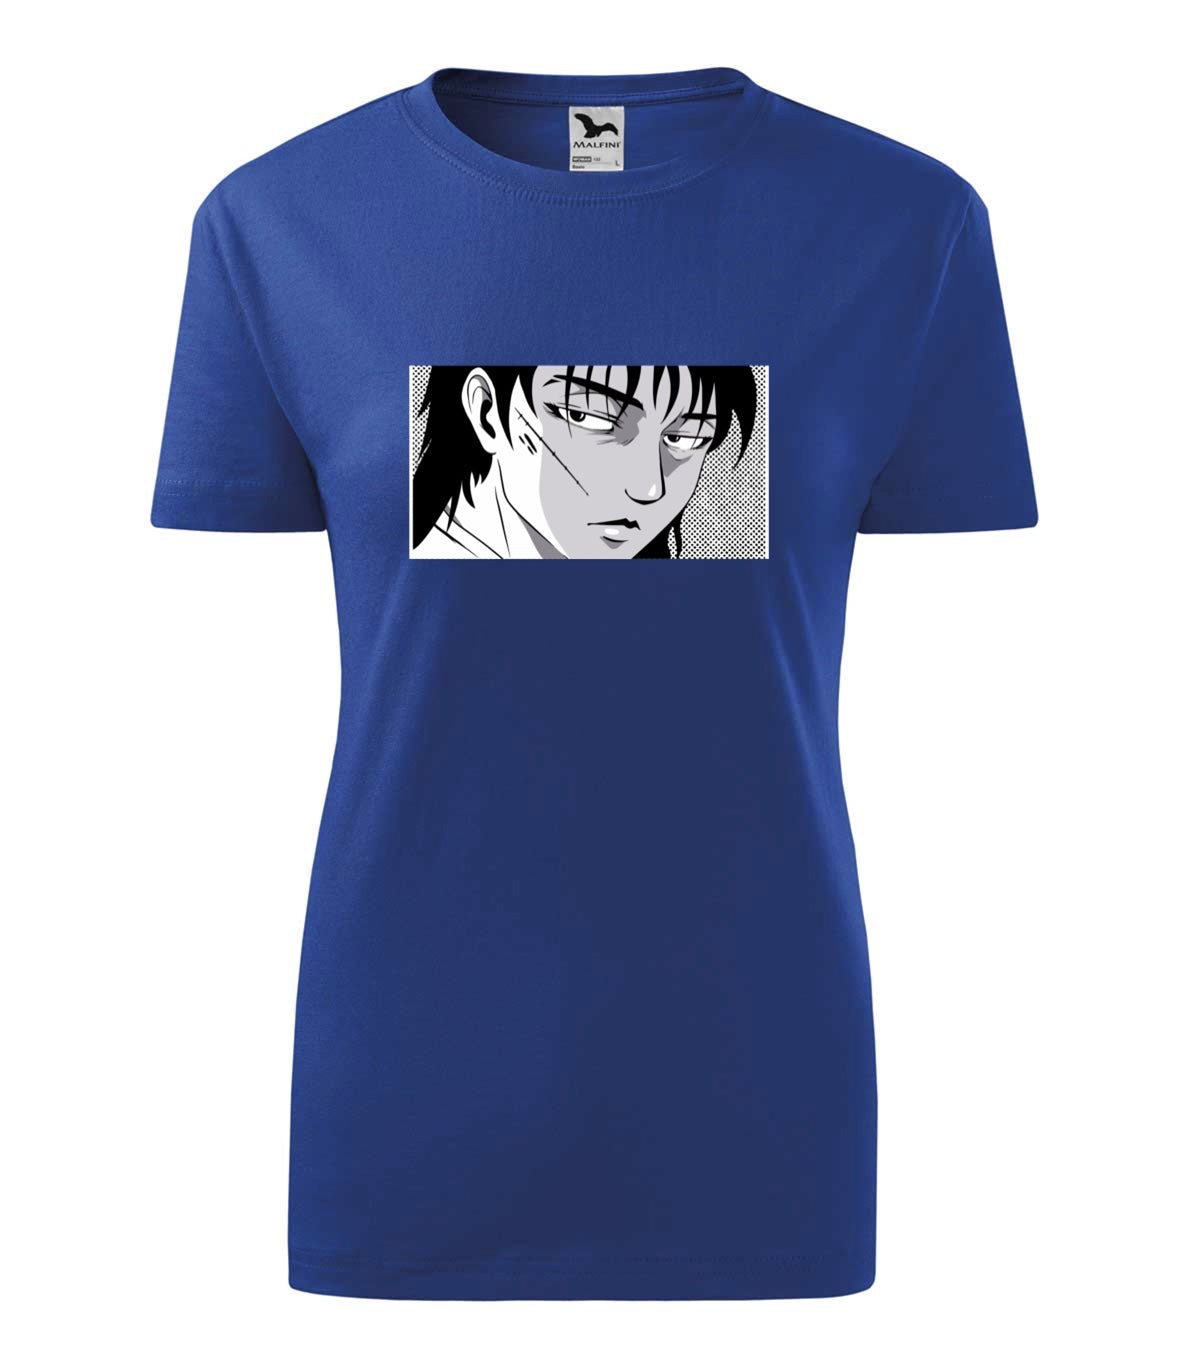 Anime boy női technikai póló